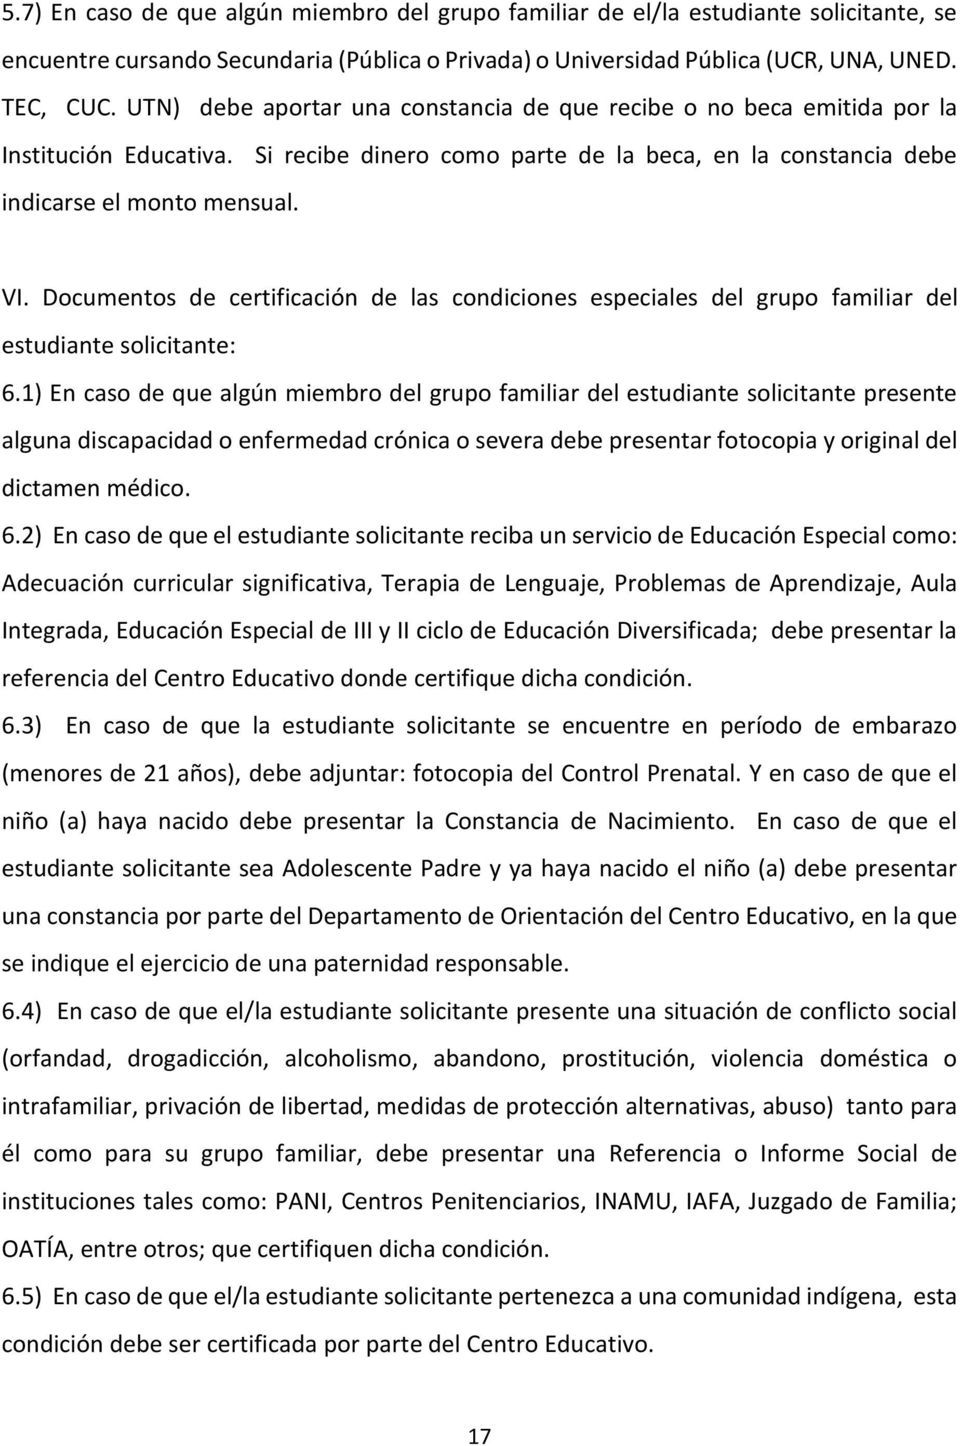 Documentos de certificación de las condiciones especiales del grupo familiar del estudiante solicitante: 6.